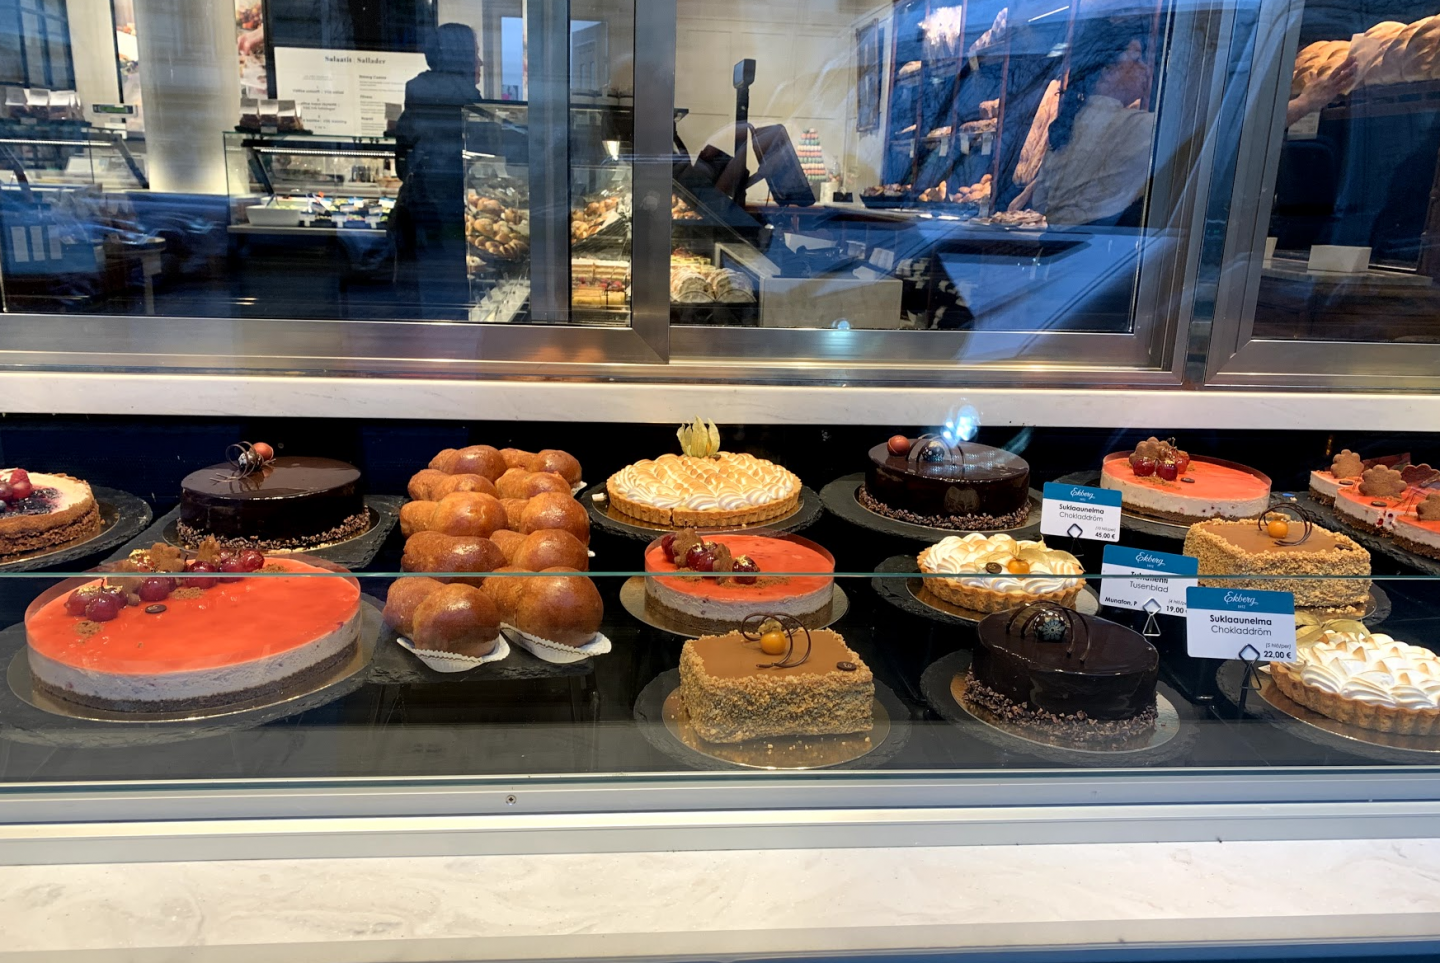 Cakes at Cafe Ekberg